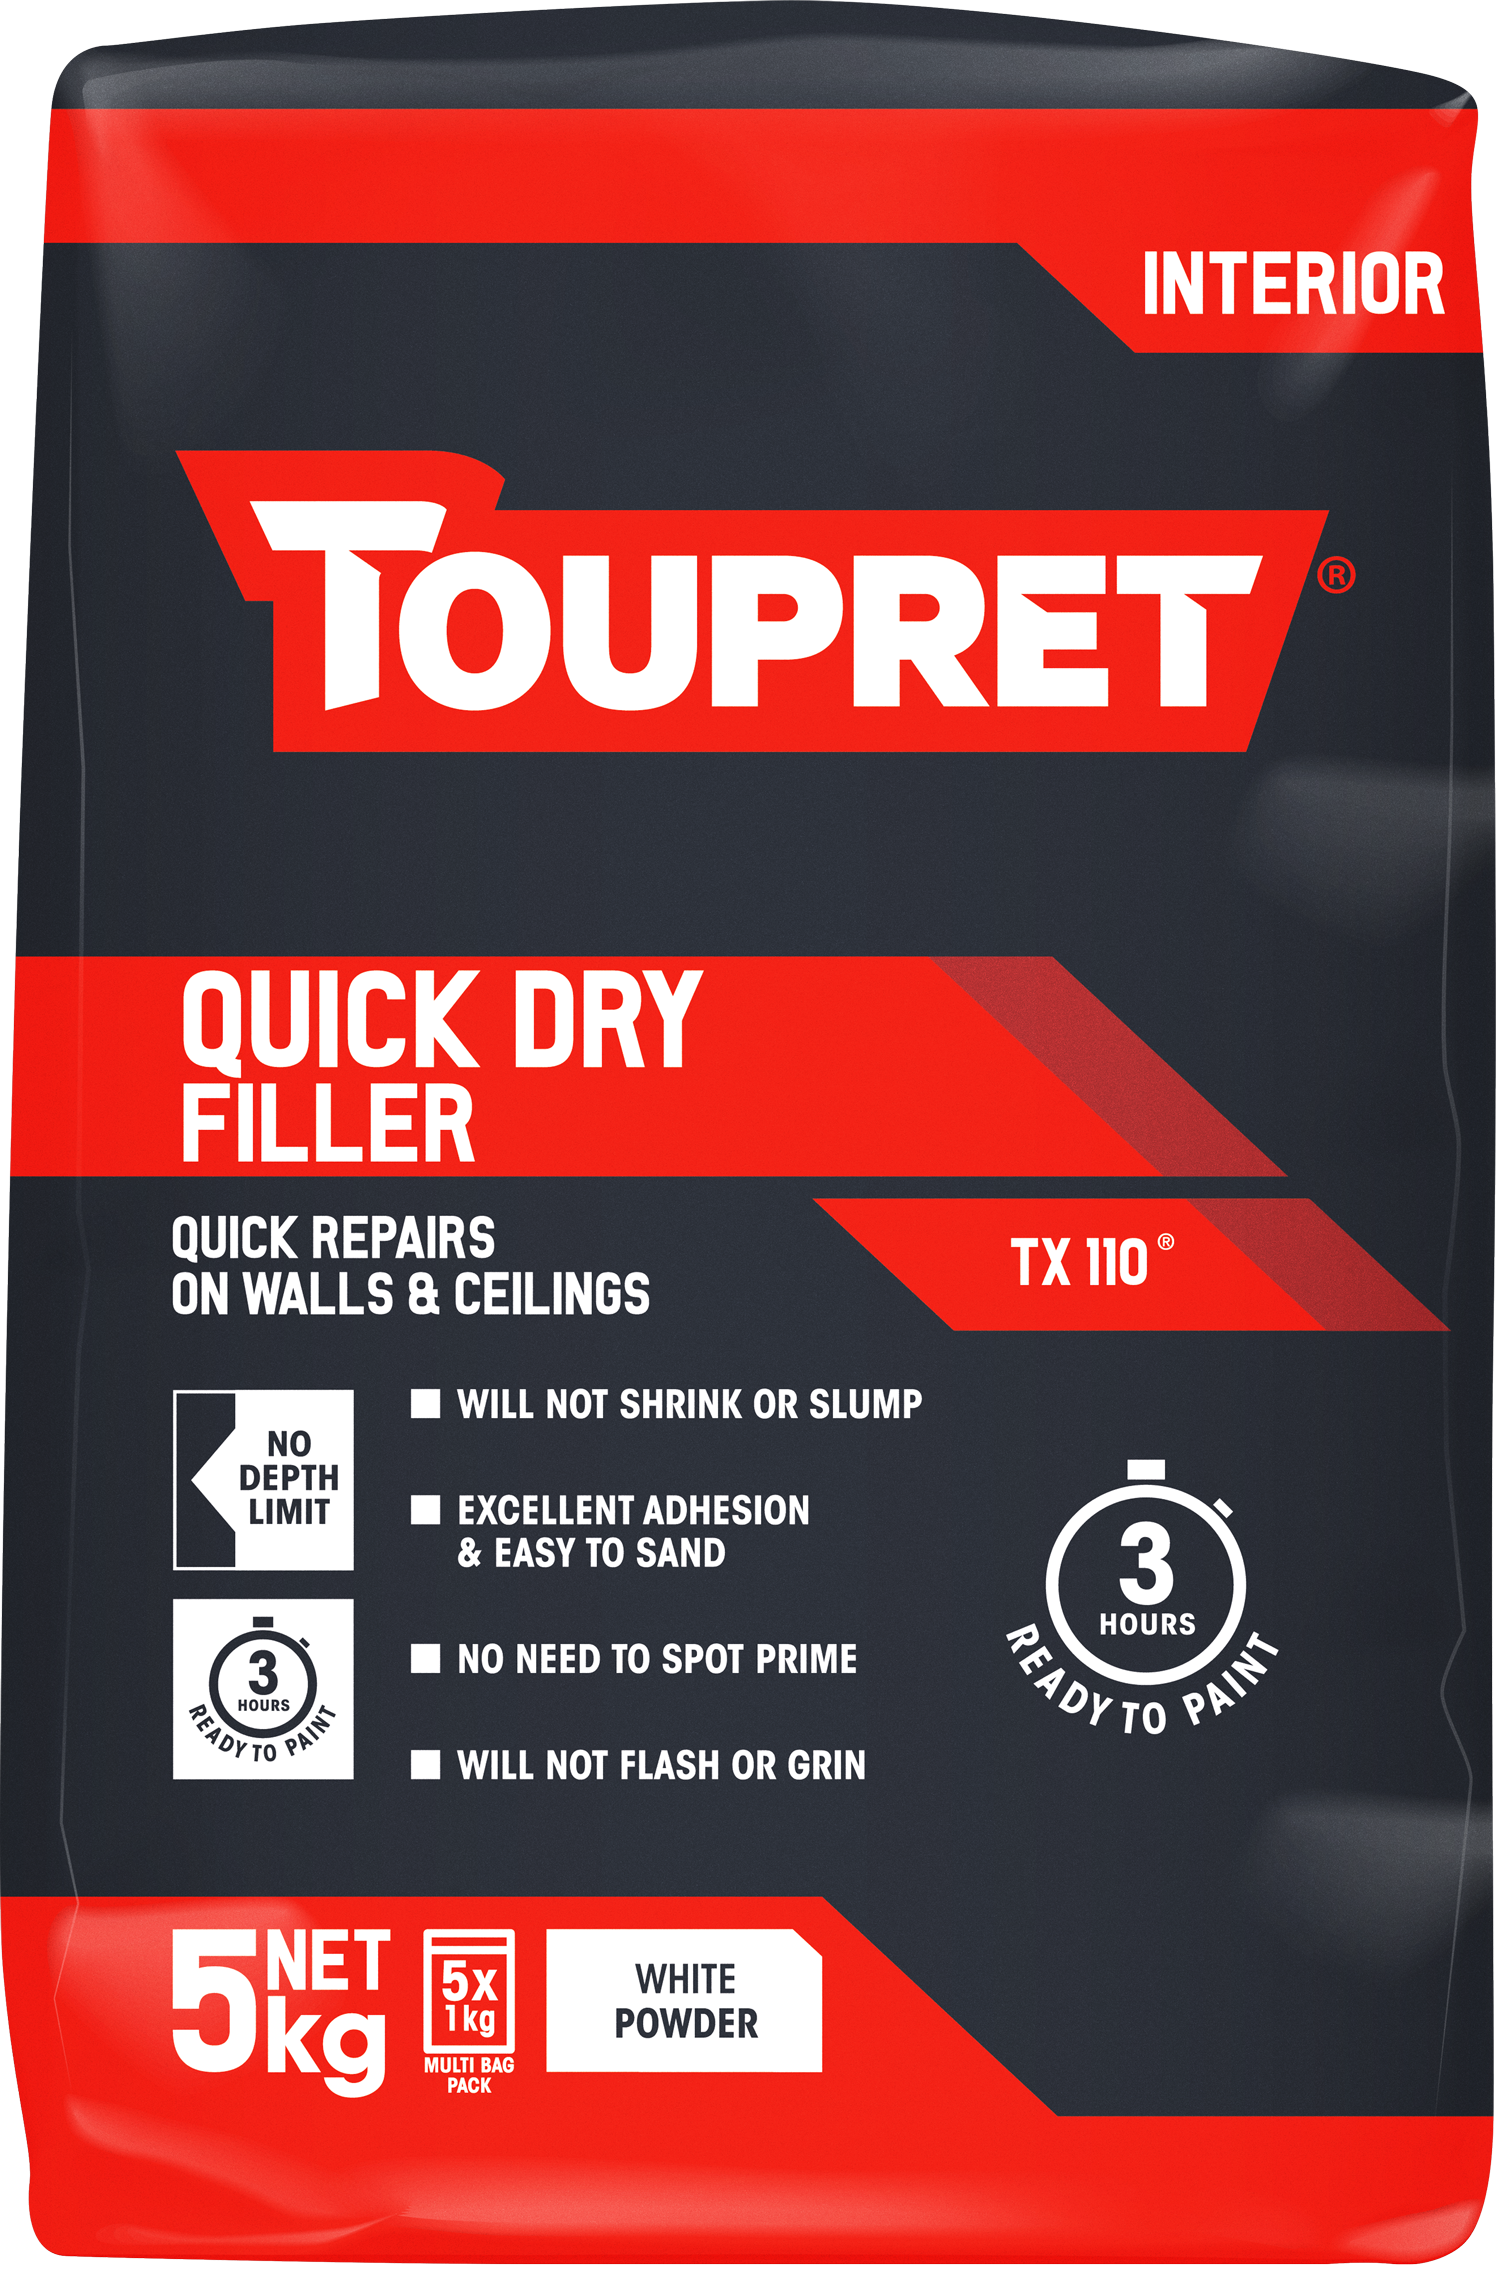 Toupret Quick Dry Filler (TX 110) 5x 1kg bag in bag